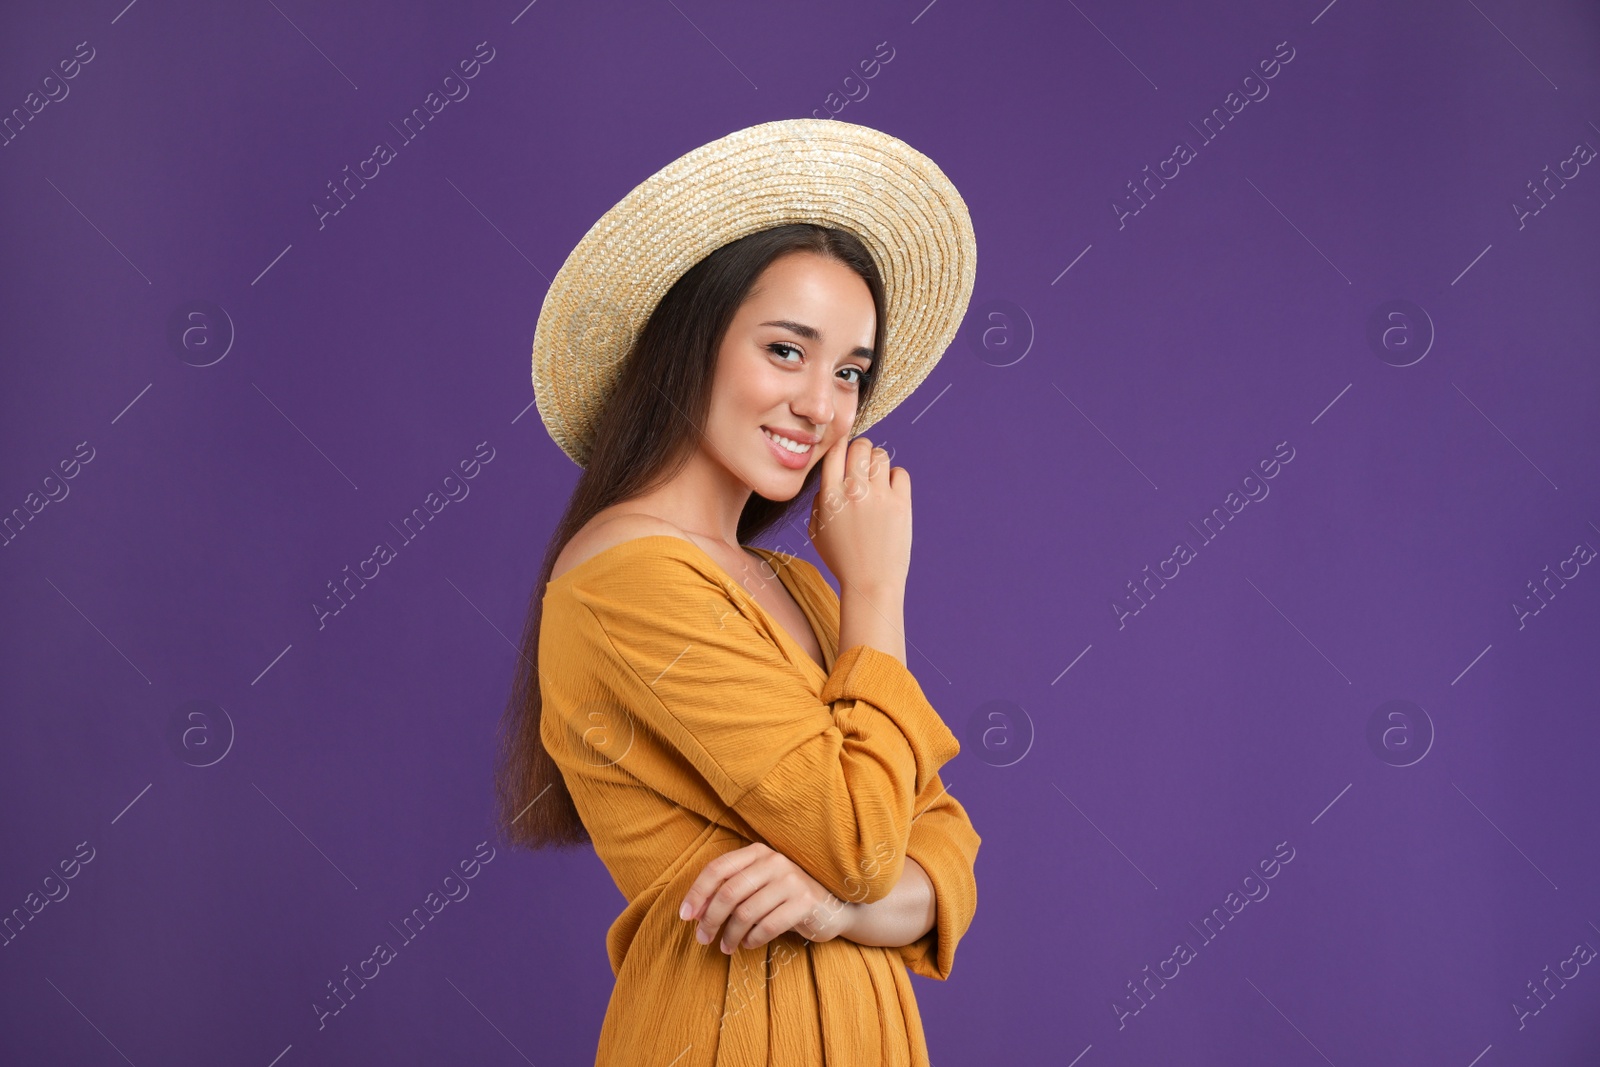 Photo of Young woman wearing stylish dress on purple background